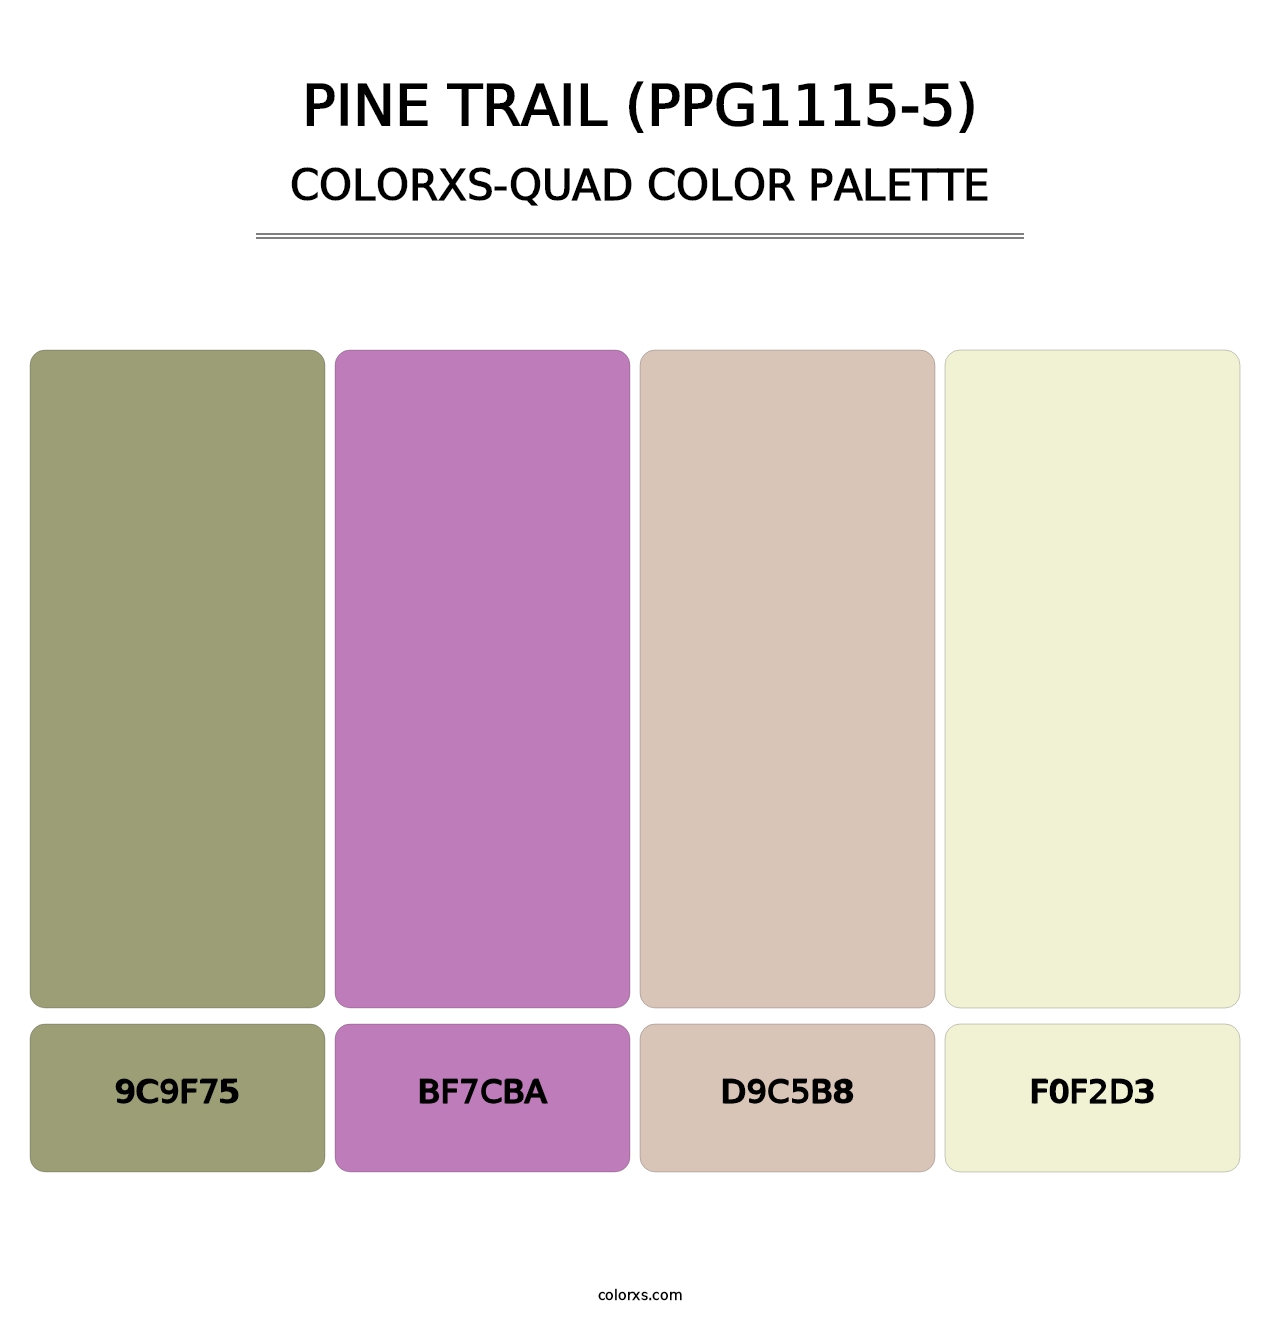 Pine Trail (PPG1115-5) - Colorxs Quad Palette